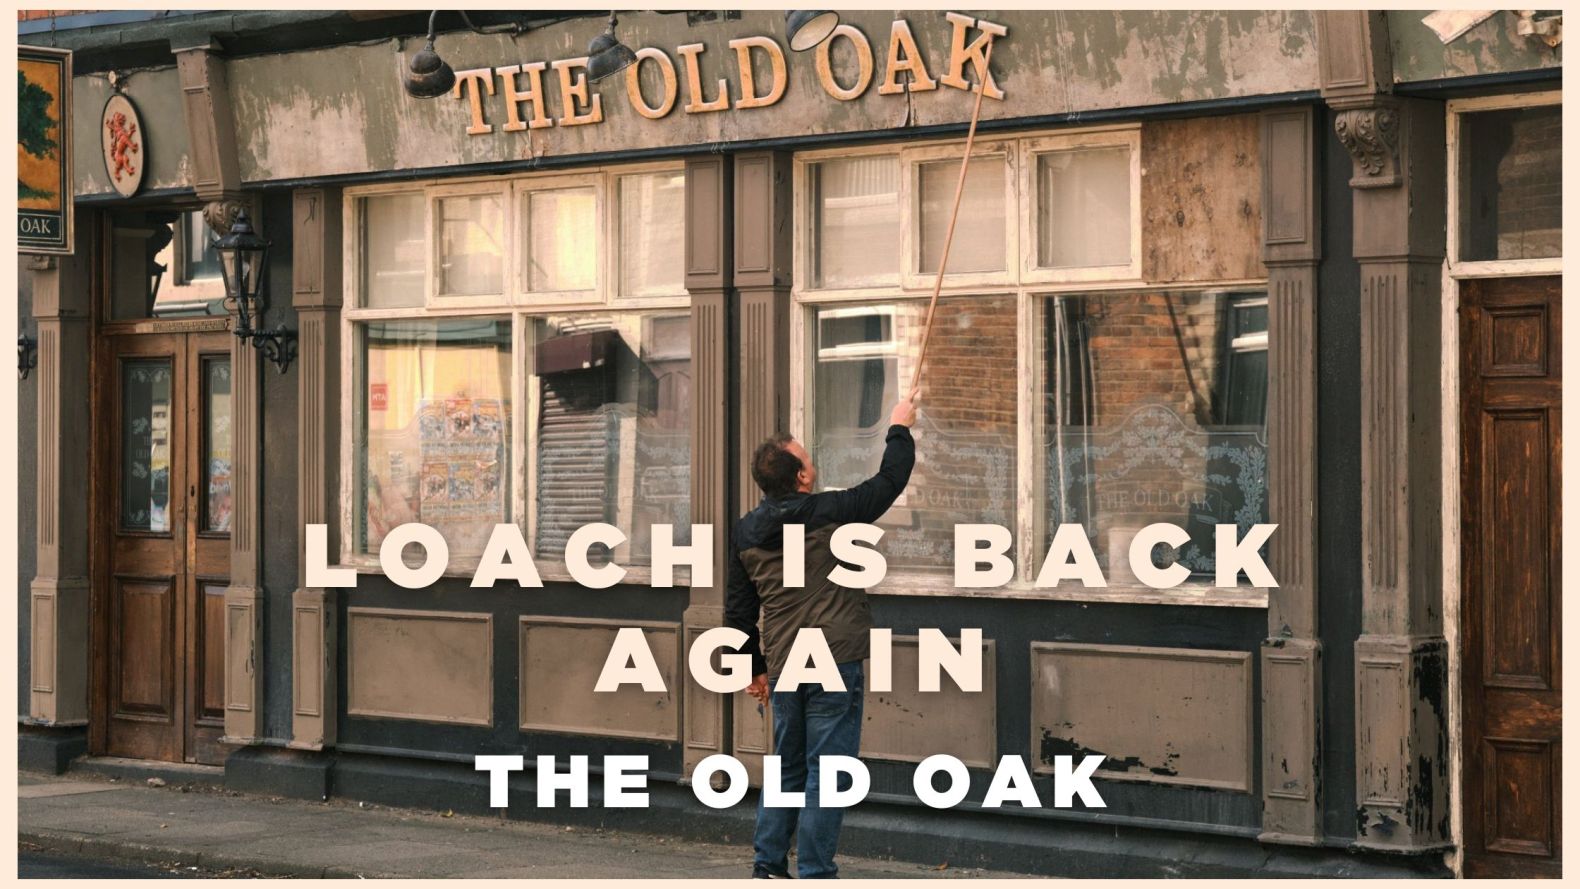 The Old Oak - Loach Is Back